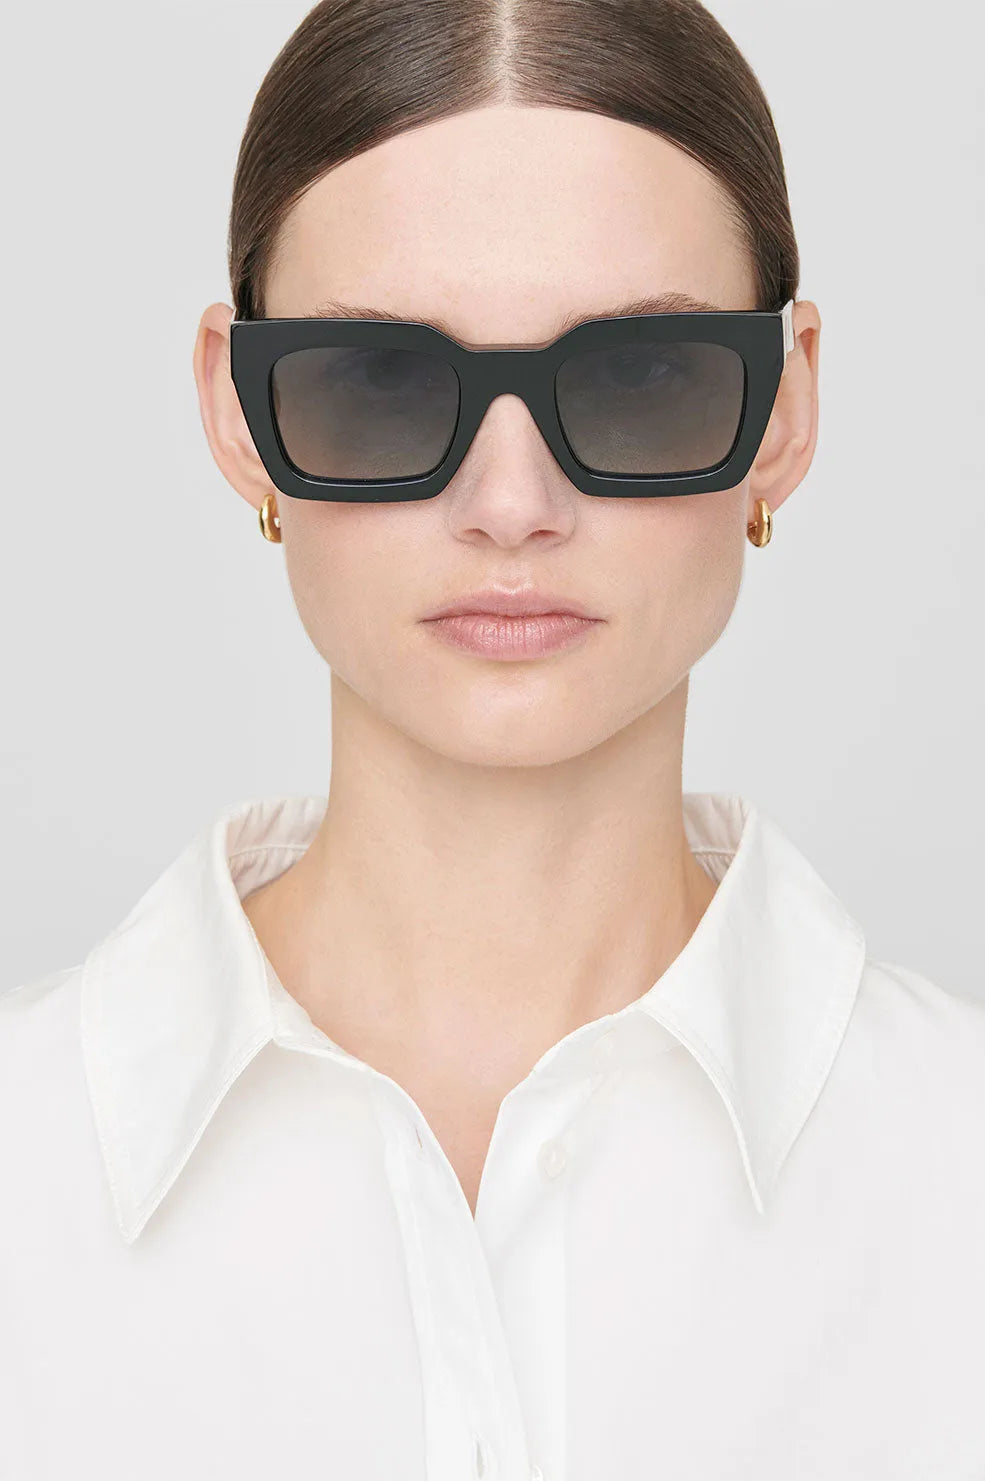 bruser vinder Bliv oppe SHOP Solbriller | Anine Bing One Indio Sunglasses, black – Cassandra